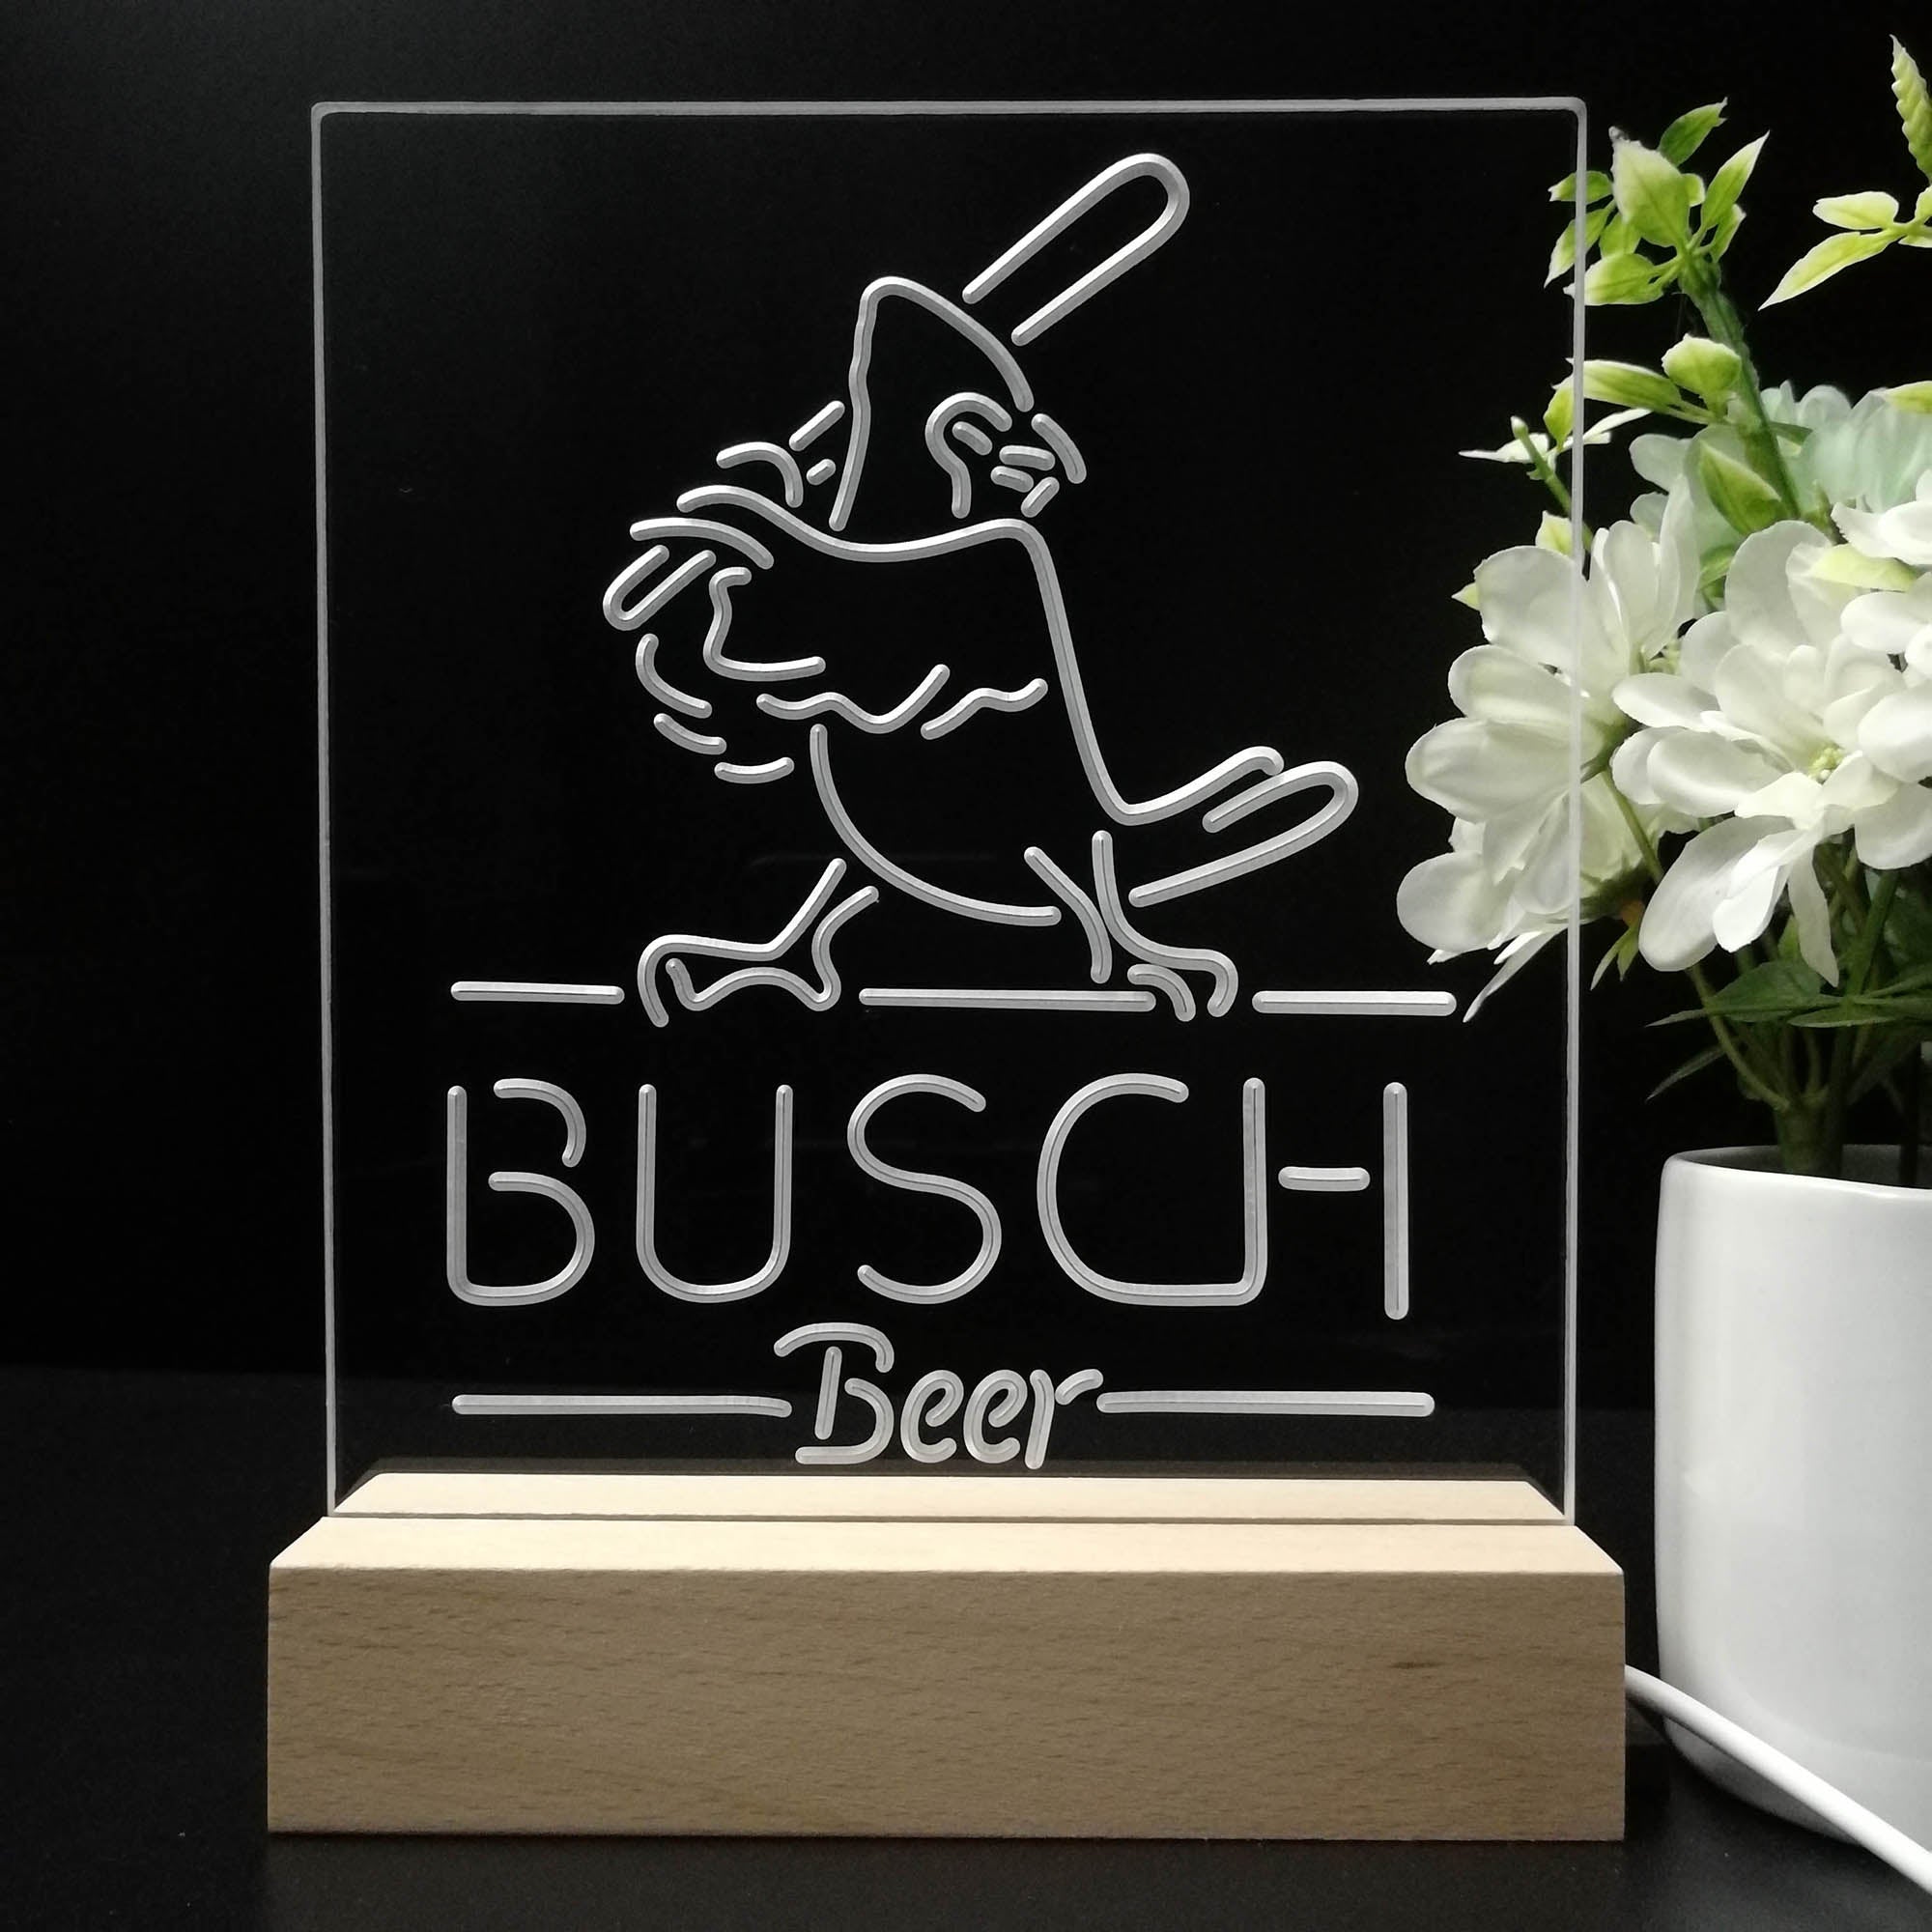 Busch Beer Baseball Bird Night Light Neon Pub Bar Lamp